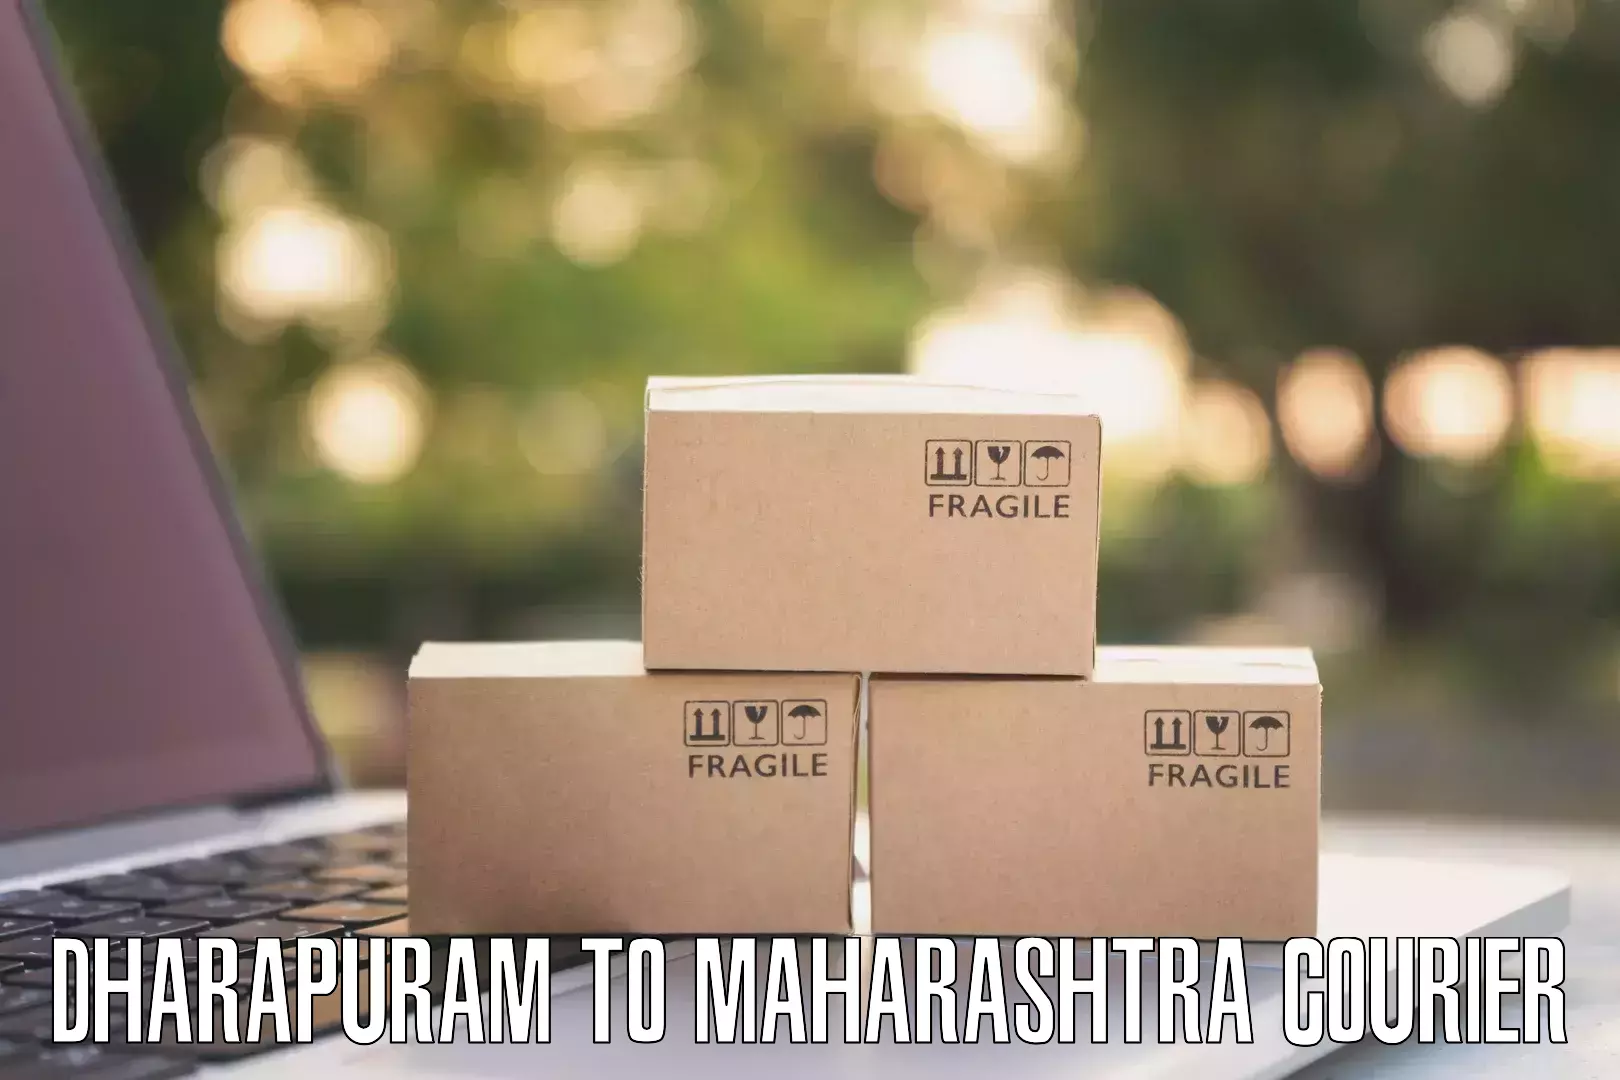 Efficient parcel service Dharapuram to Mumbai Port